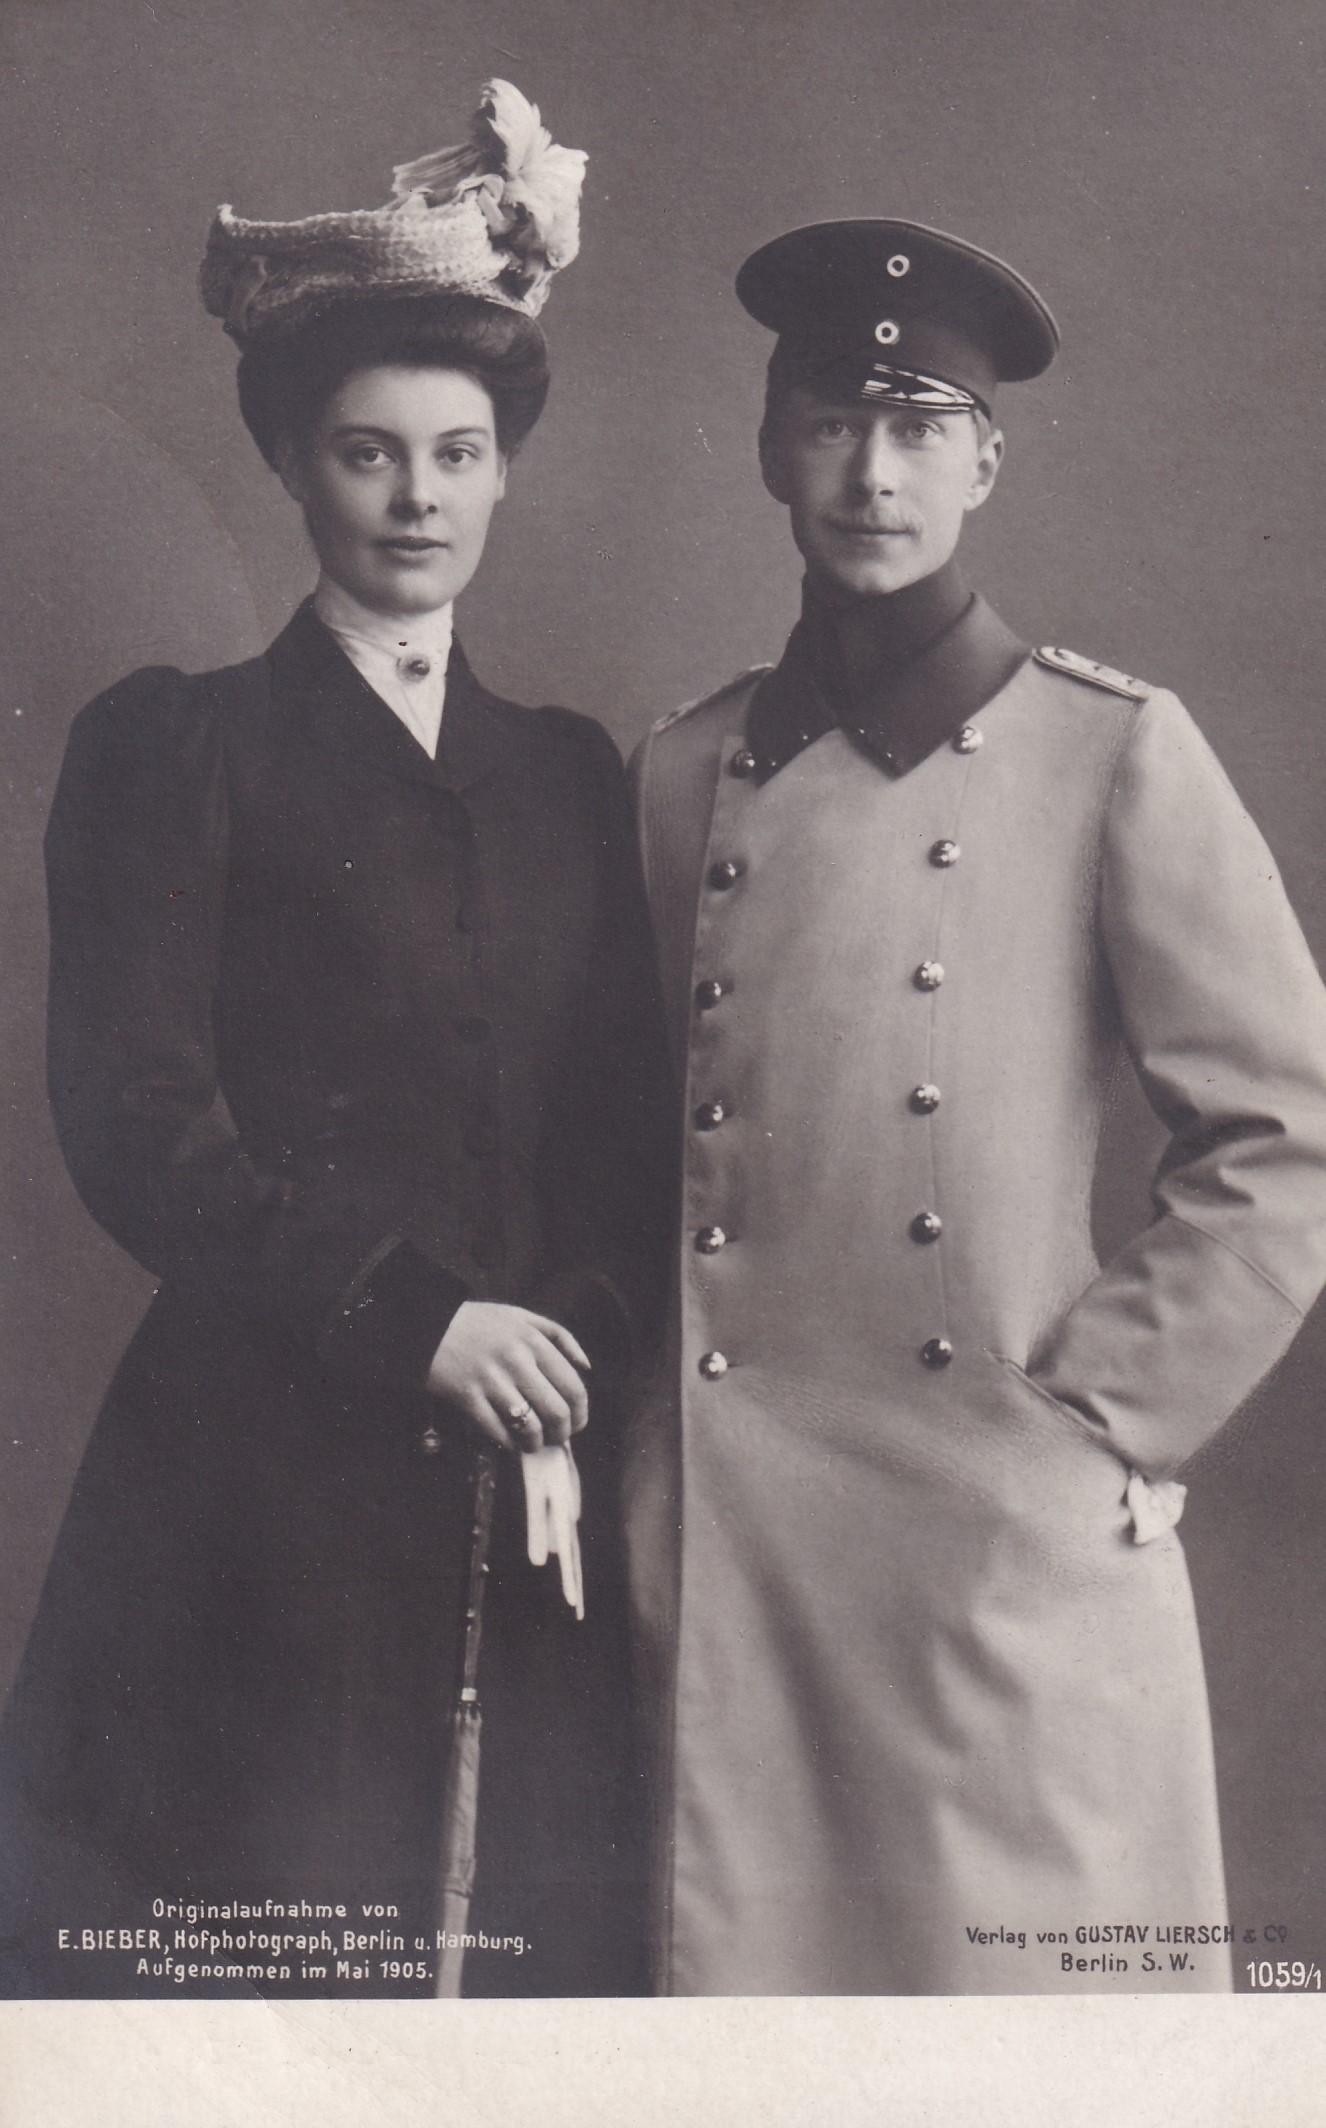 Bildpostkarte mit Foto des Kronprinzenpaares Wilhelm und Cecilie aus der Verlobungszeit, Mai 1905 (Schloß Wernigerode GmbH RR-F)